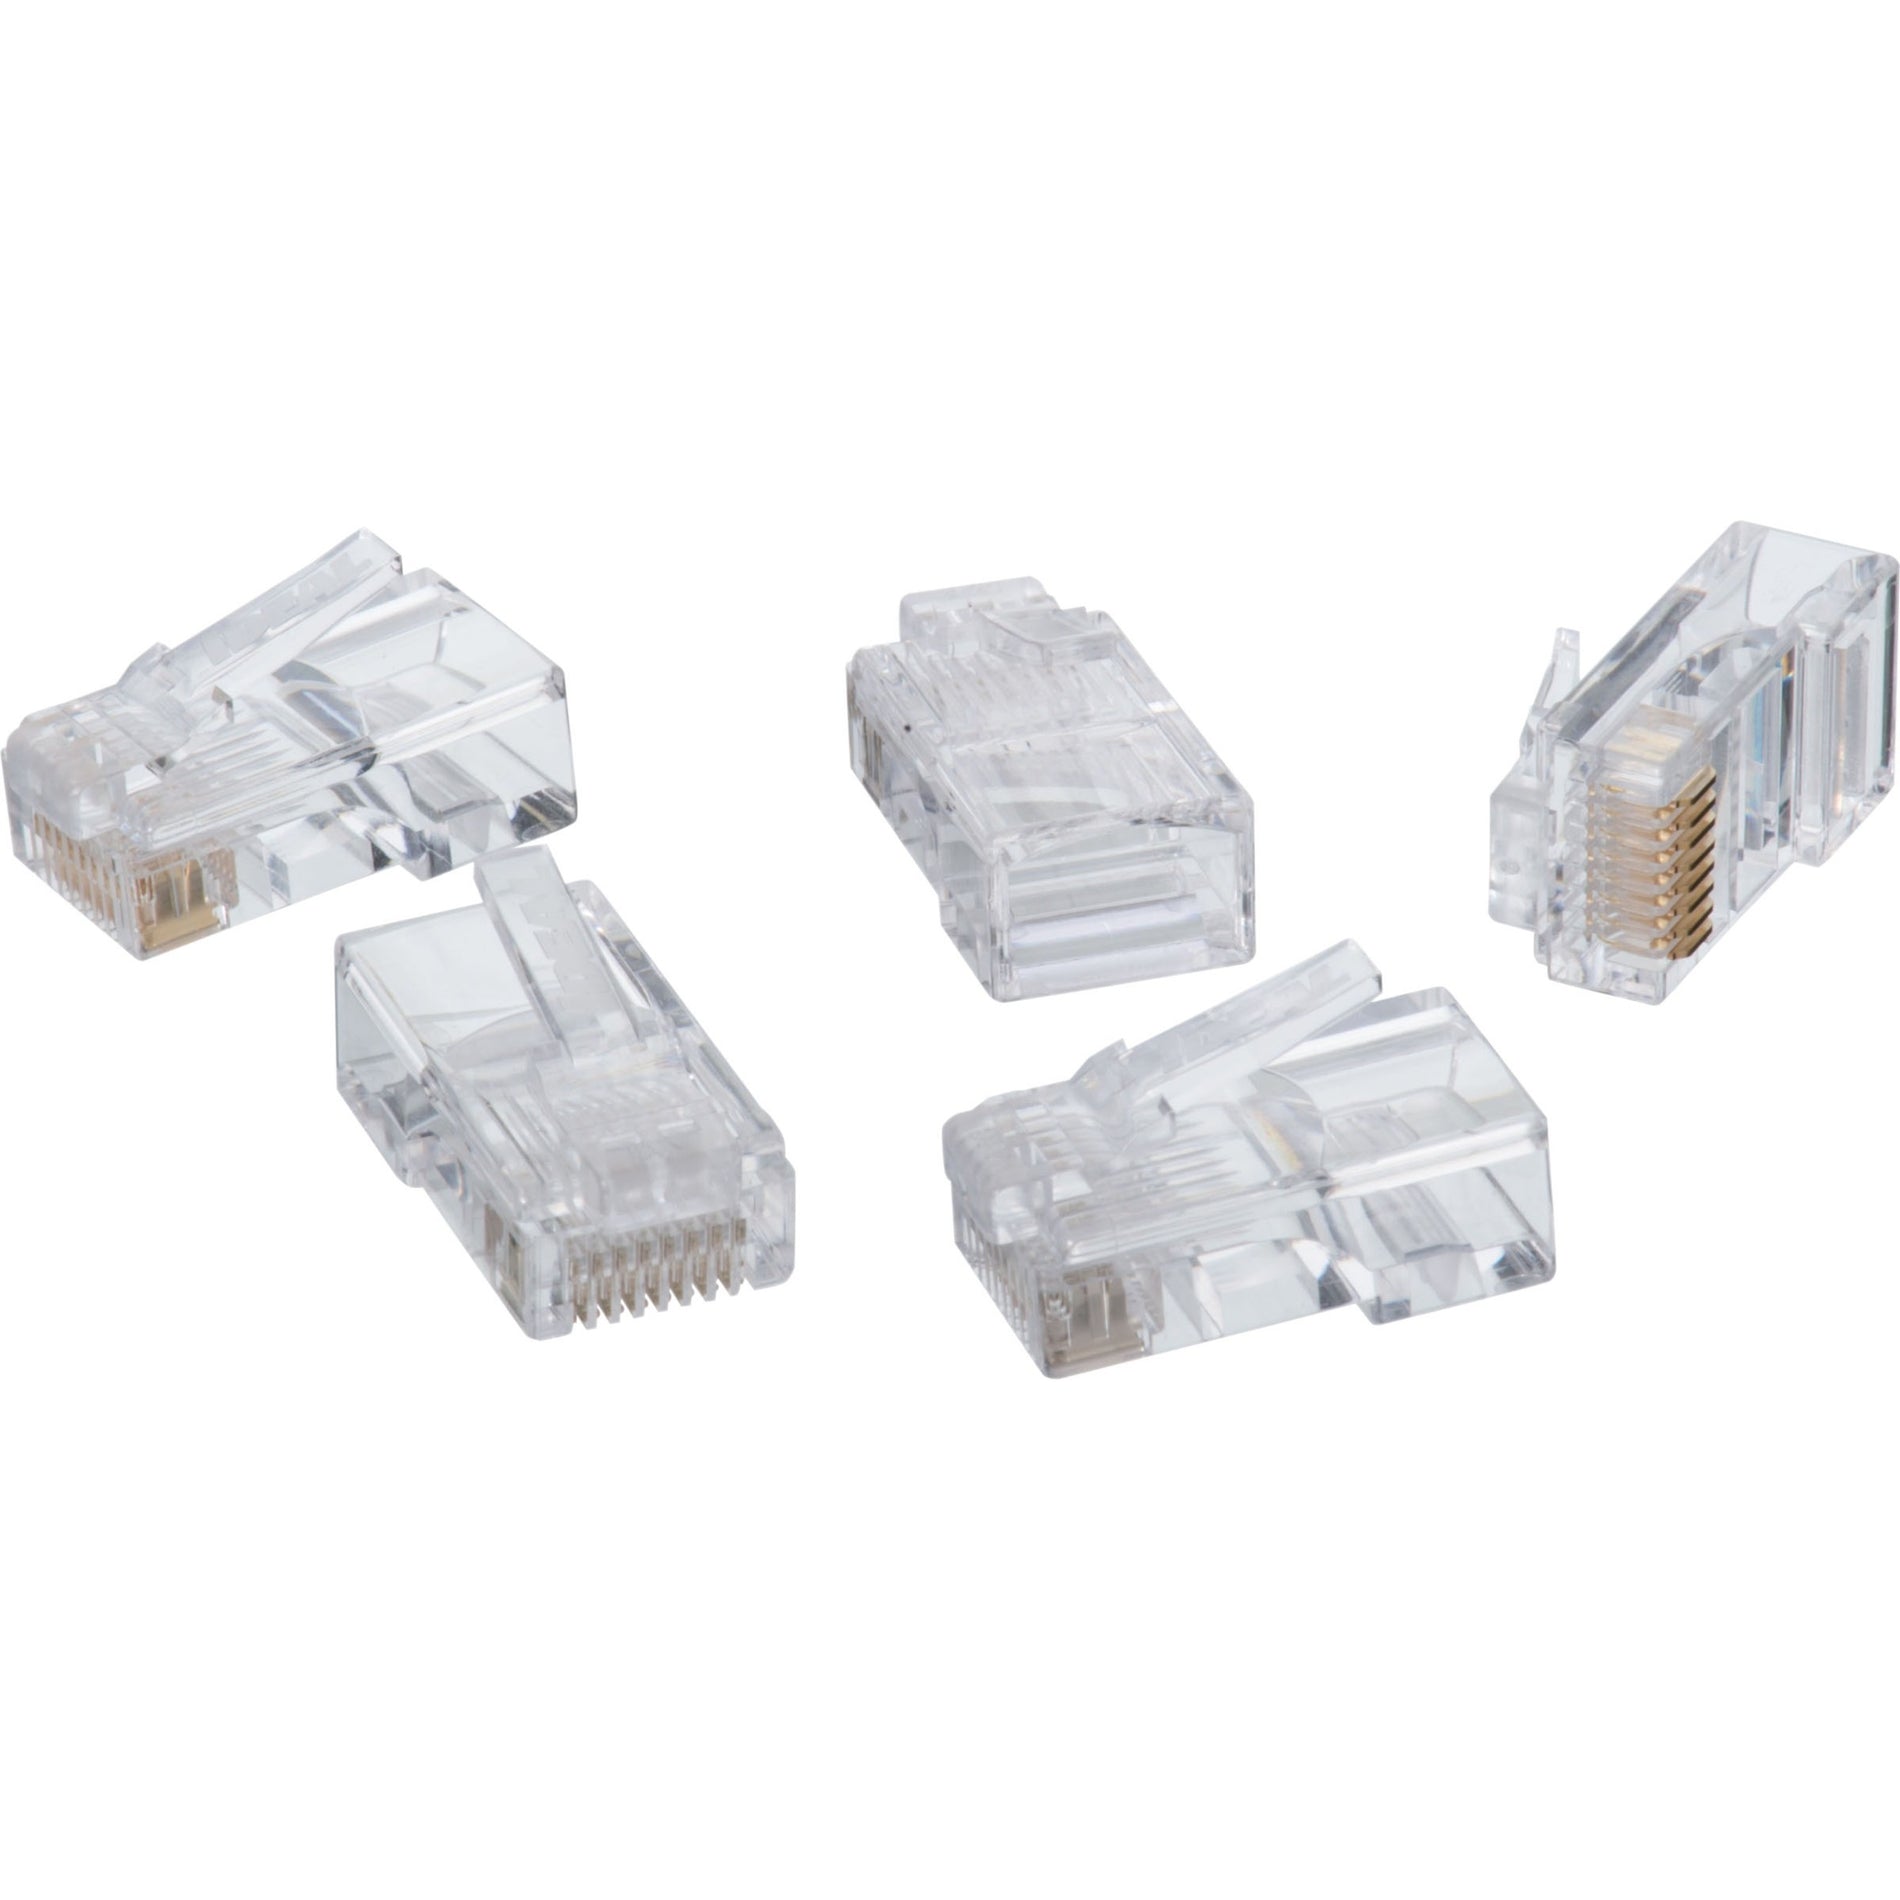 4XEM 4X1000PKC6 1000PK Cat6 RJ45 Ethernet Plugs/Connectors, Gold Plated, Clear, Lifetime Warranty